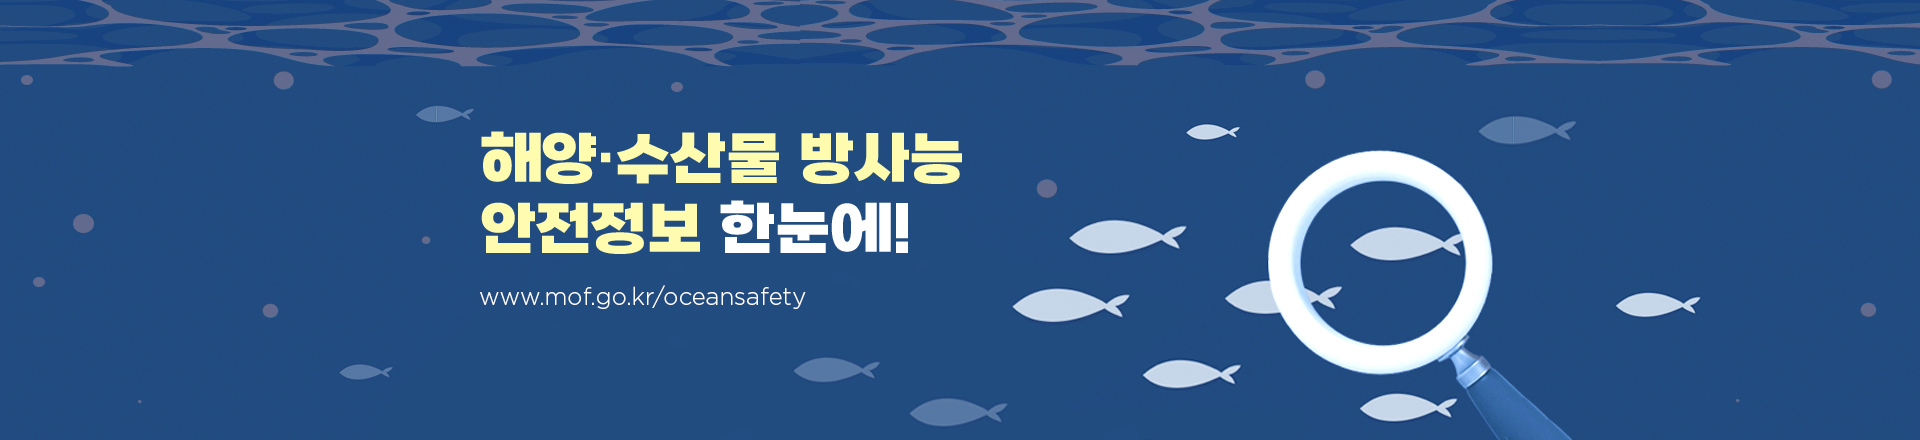 해양·수산물 방사능 안전정보 한눈에! www.mof.kr/oceansafety